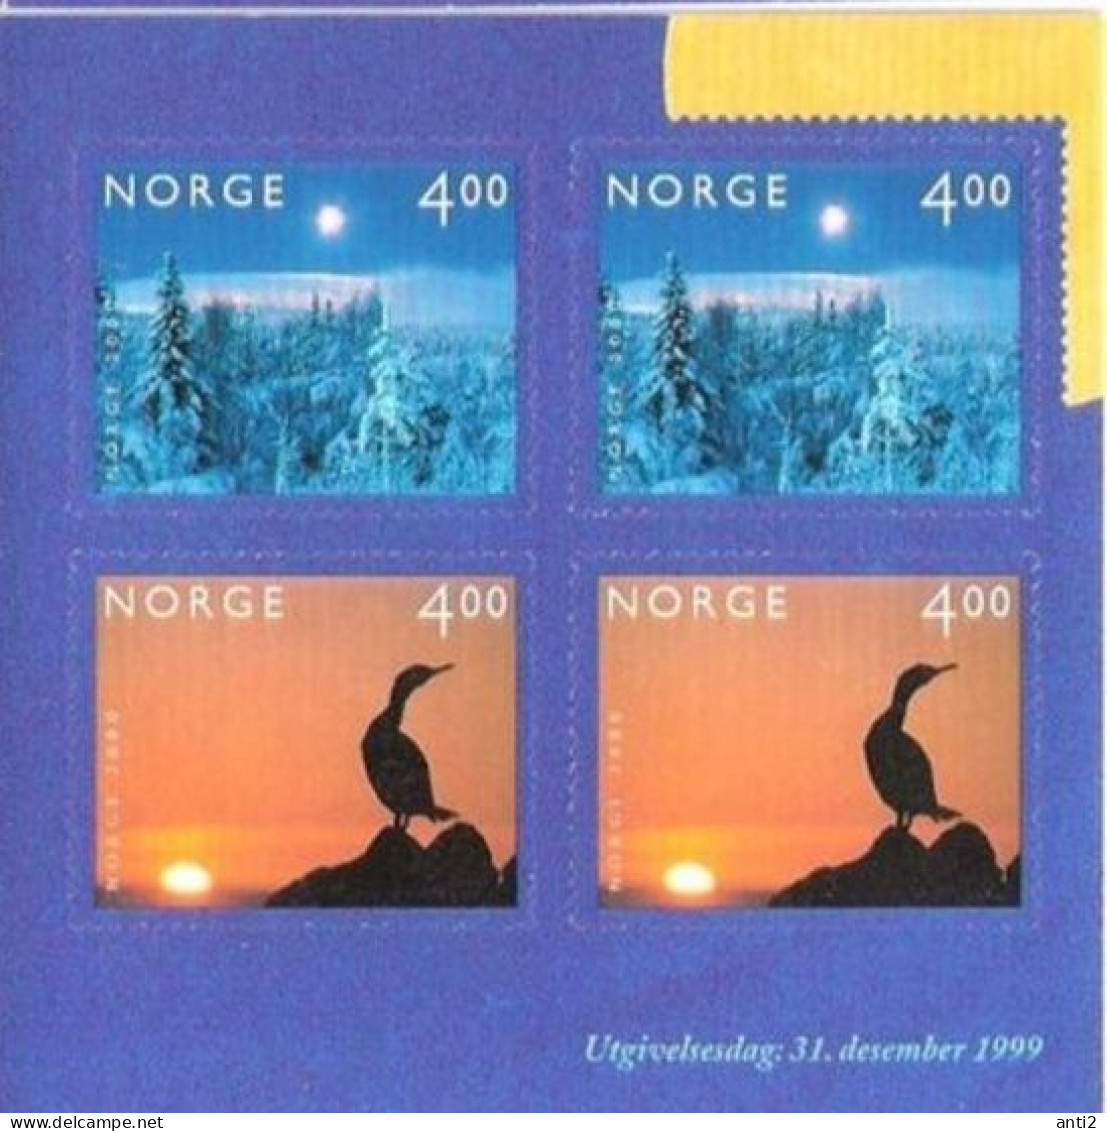 Norge Norway 1999 Millennium (III). Bird And Winter, Mi 1335-1336 From Booklet,  MNH(**) - Ongebruikt